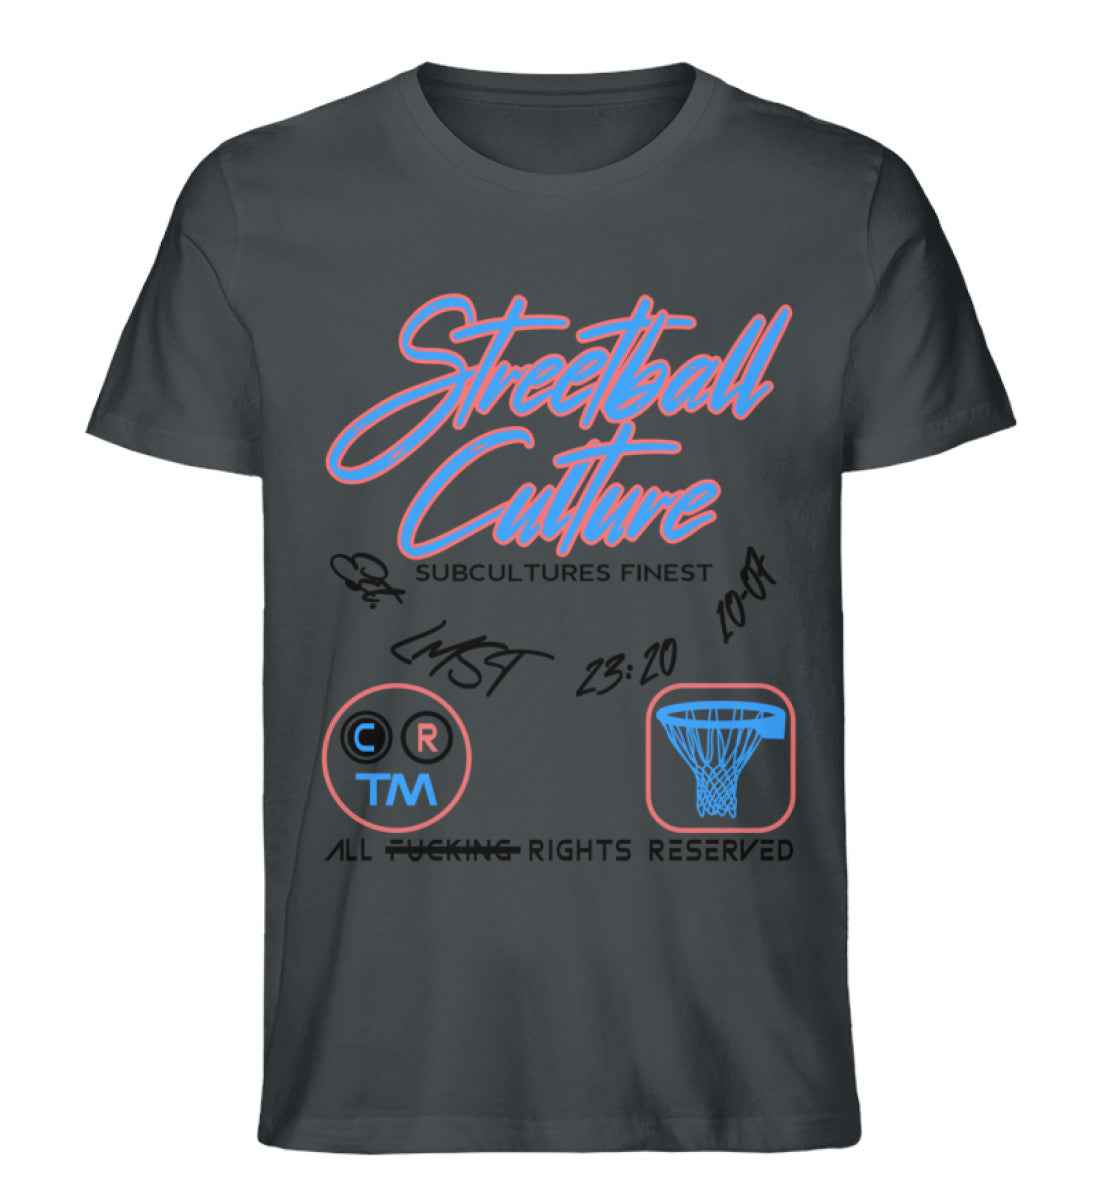 Schwarzes T-Shirt für Frauen und Männer bedruckt mit dem Design der Roger Rockawoo Kollektion Basketball Streetball Buzzer Beater